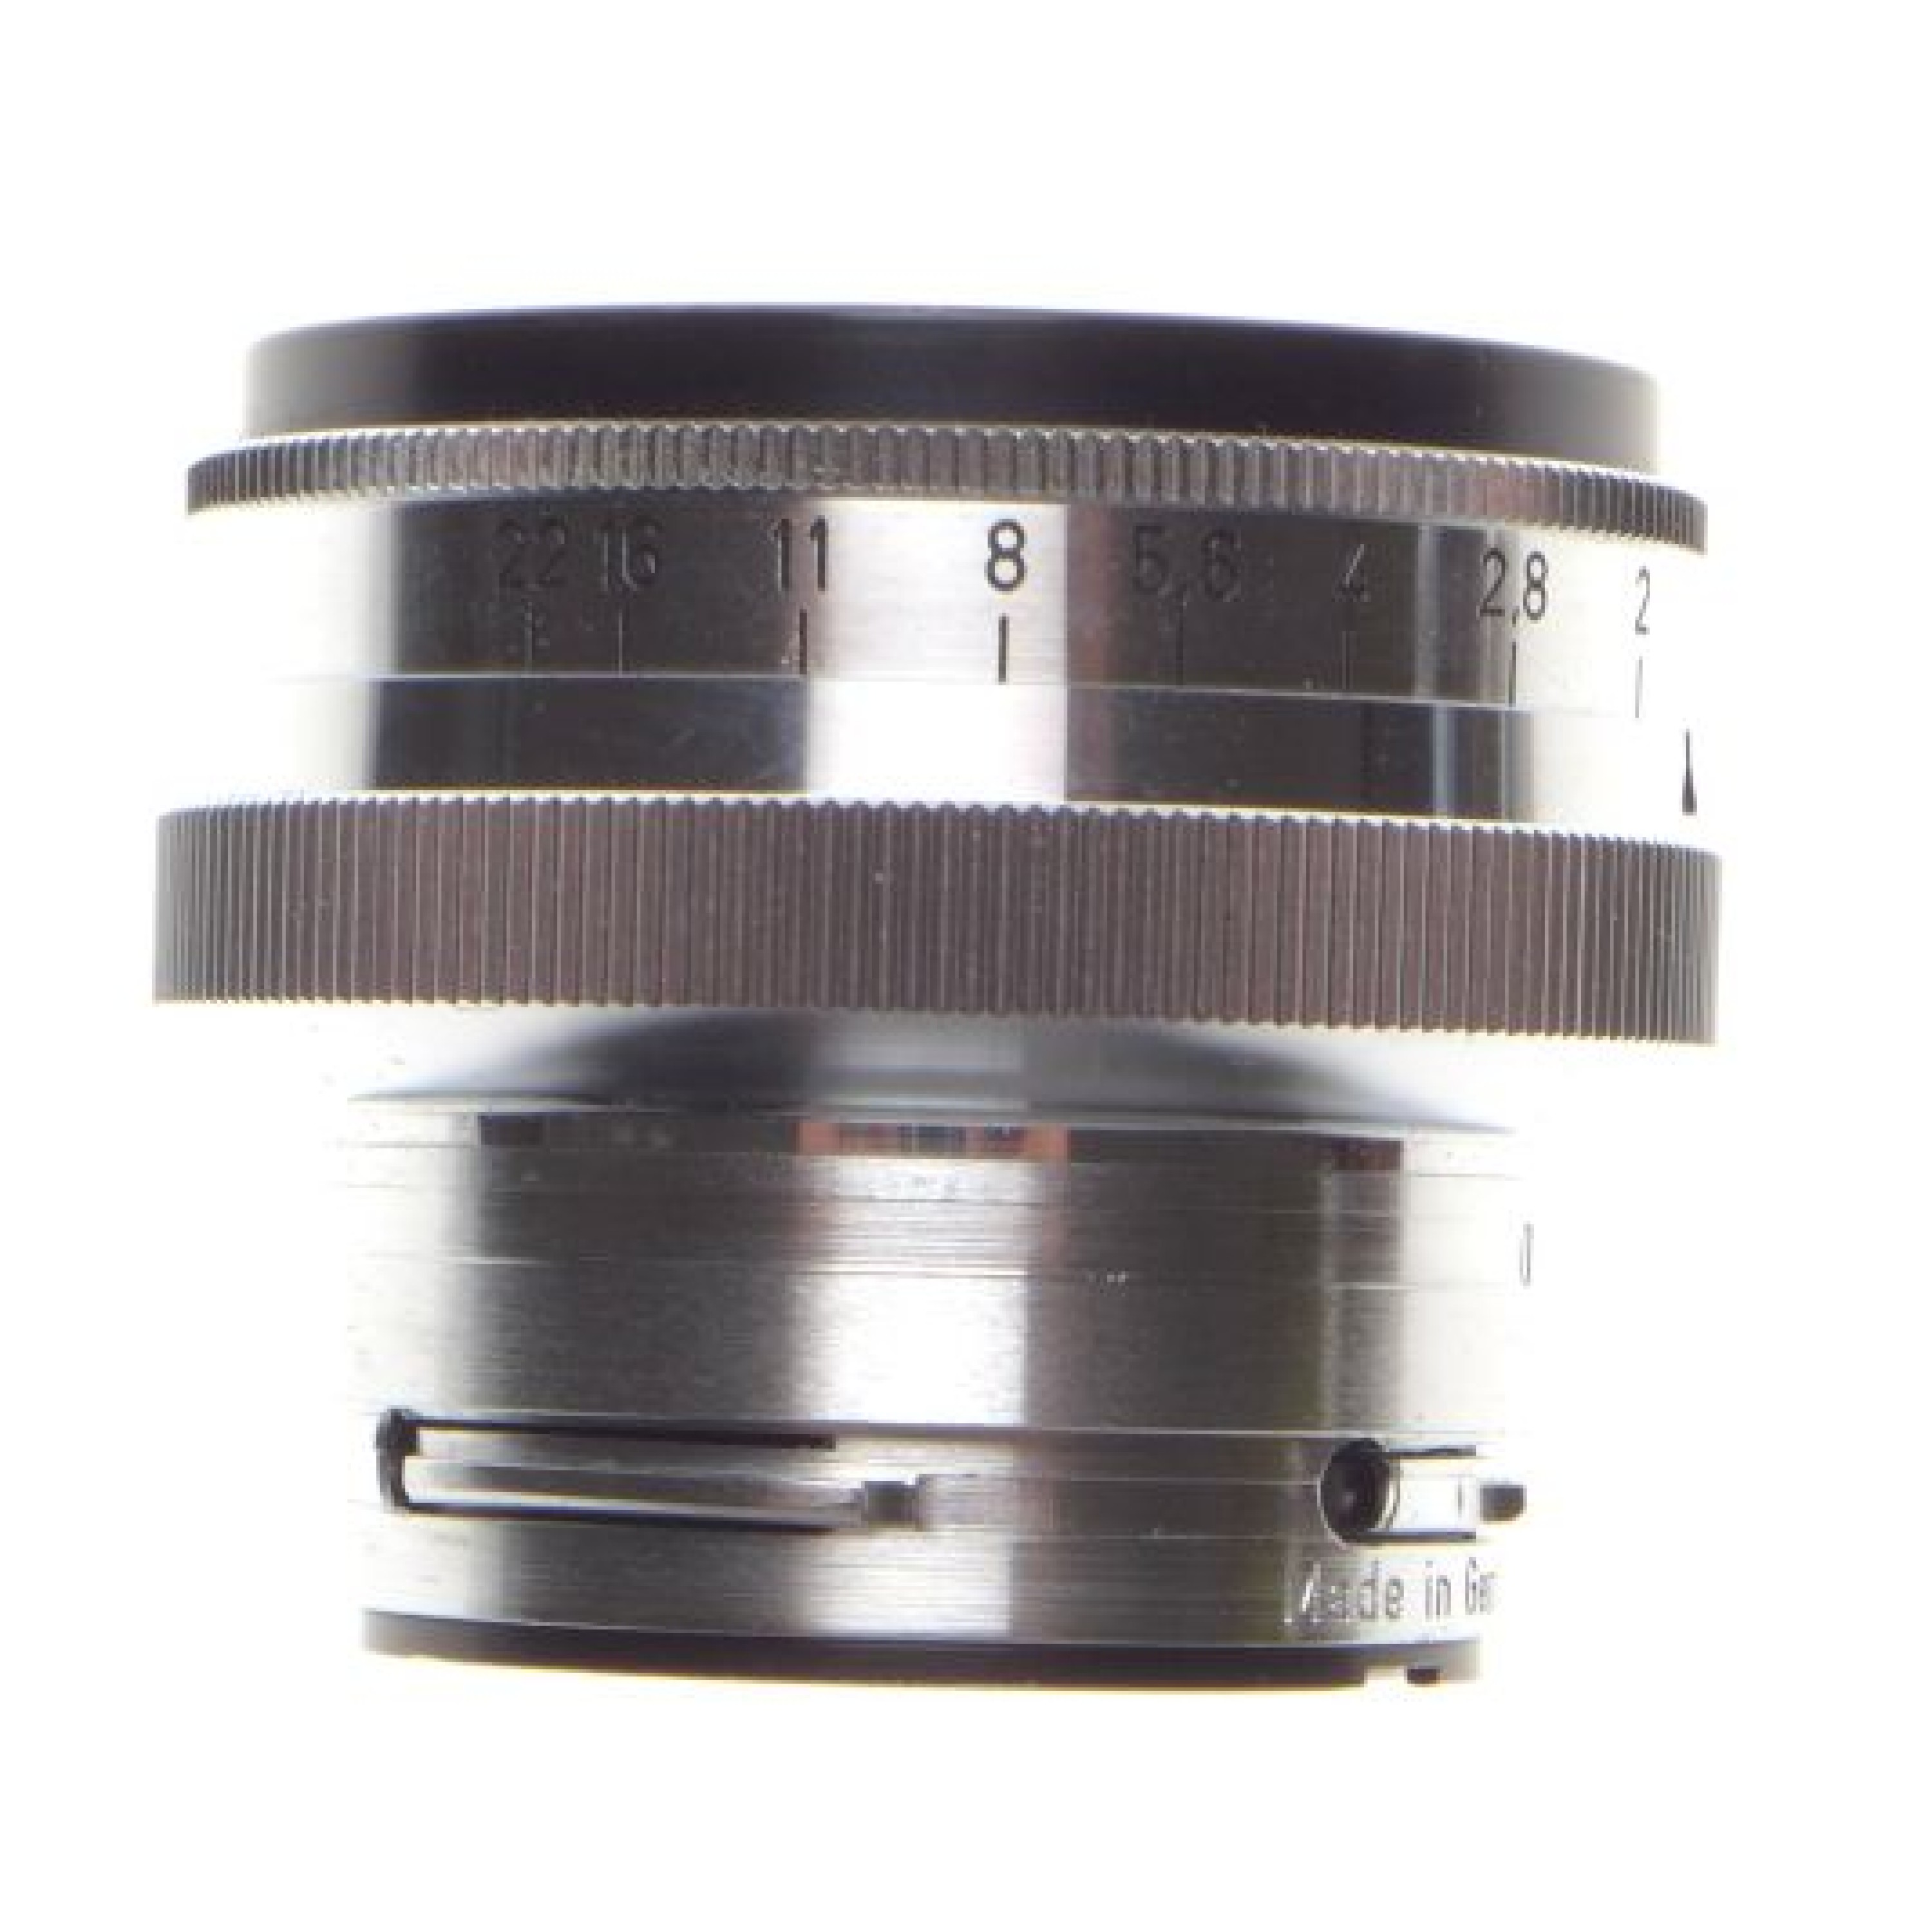 ZEISS IKON Contax IIIa rangefinder camera Sonnar 1:2/50 coated